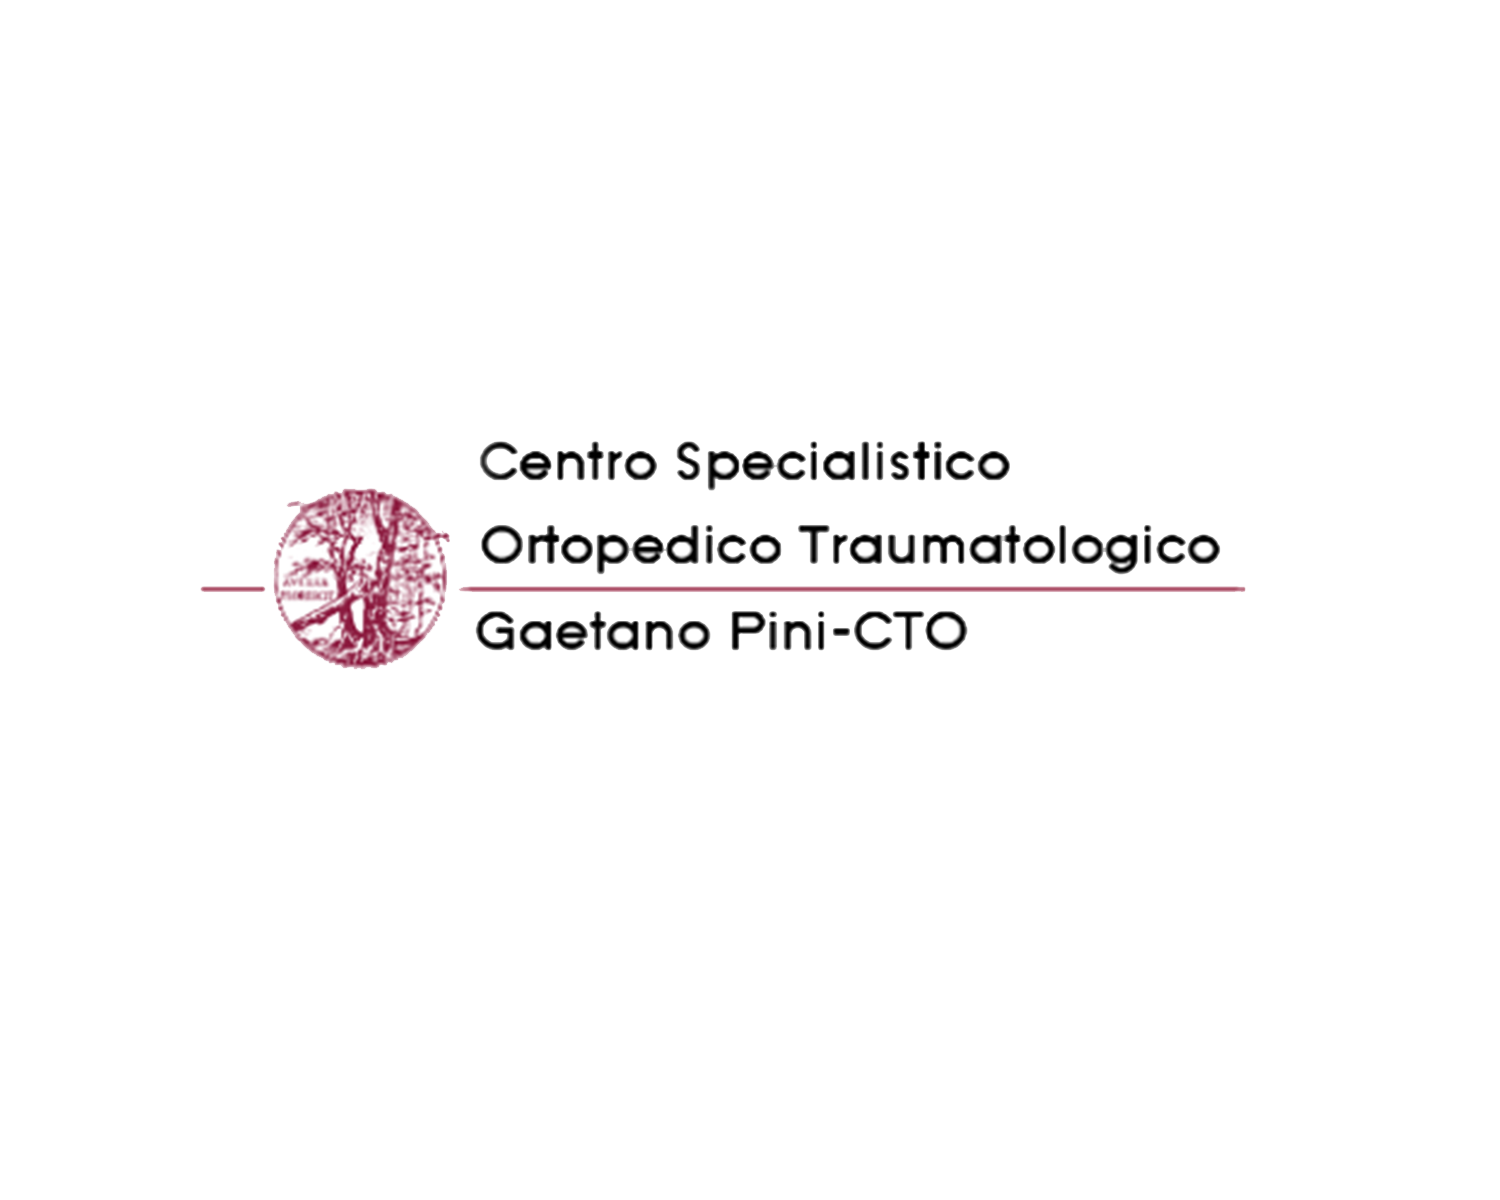 Centro Specialistico Ortopedico Traumatologico